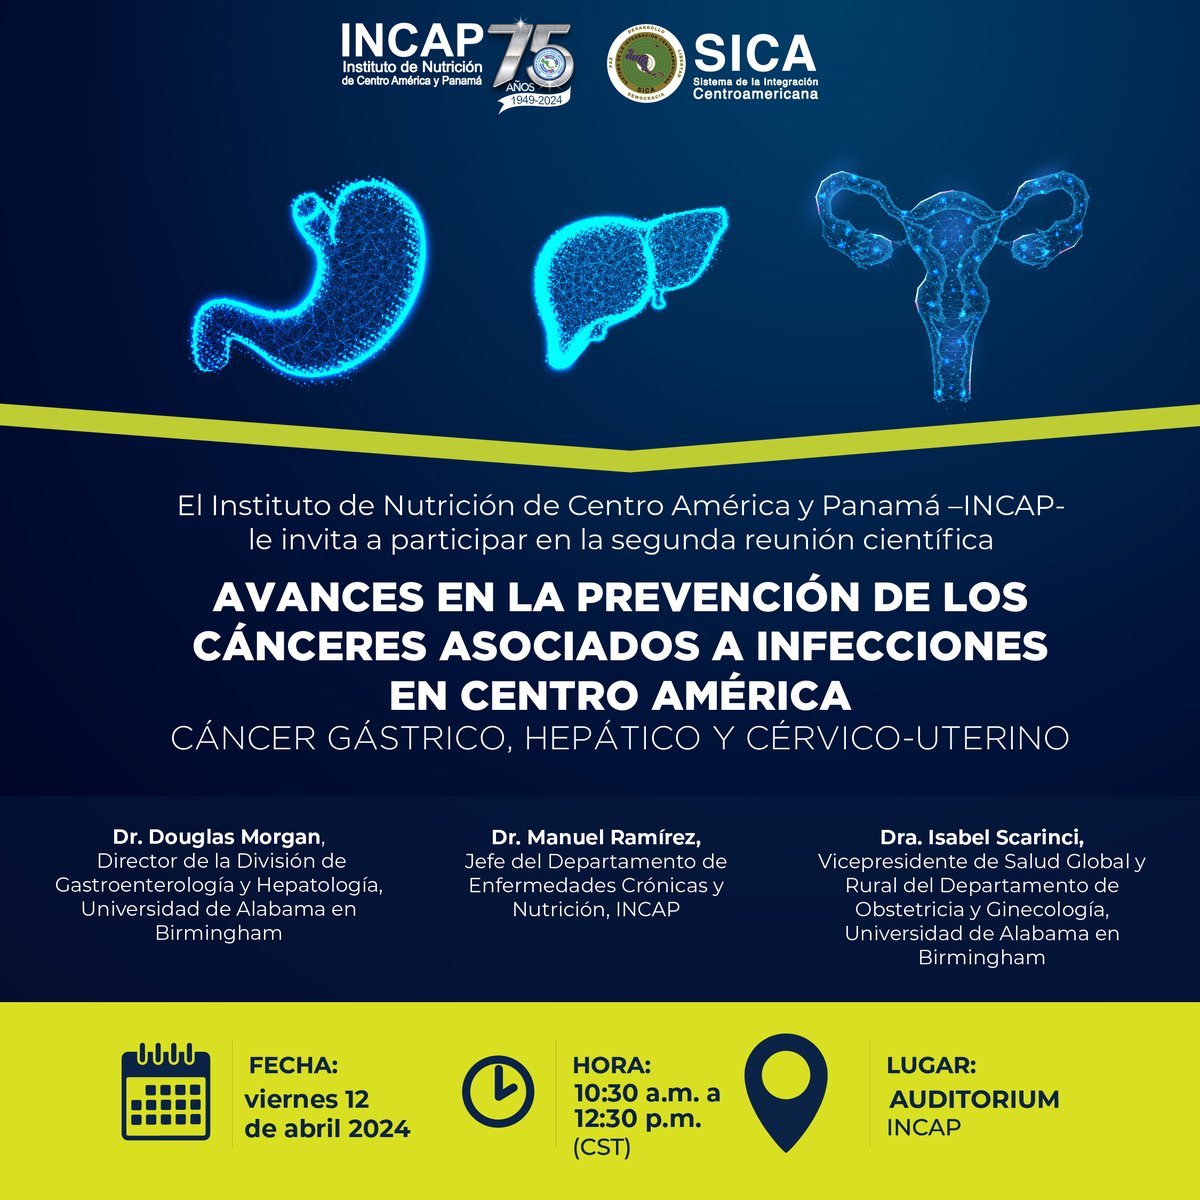 INVITACIÓN a reunión científica (virtual) del INCAP ✅viernes 12 de abril 2024 🕥10:30 a 12:30 horas (hora Guatemala) La transmisión se realizará en directo a través de Facebook Live del INCAP: facebook.com/incap.int @sg_sica